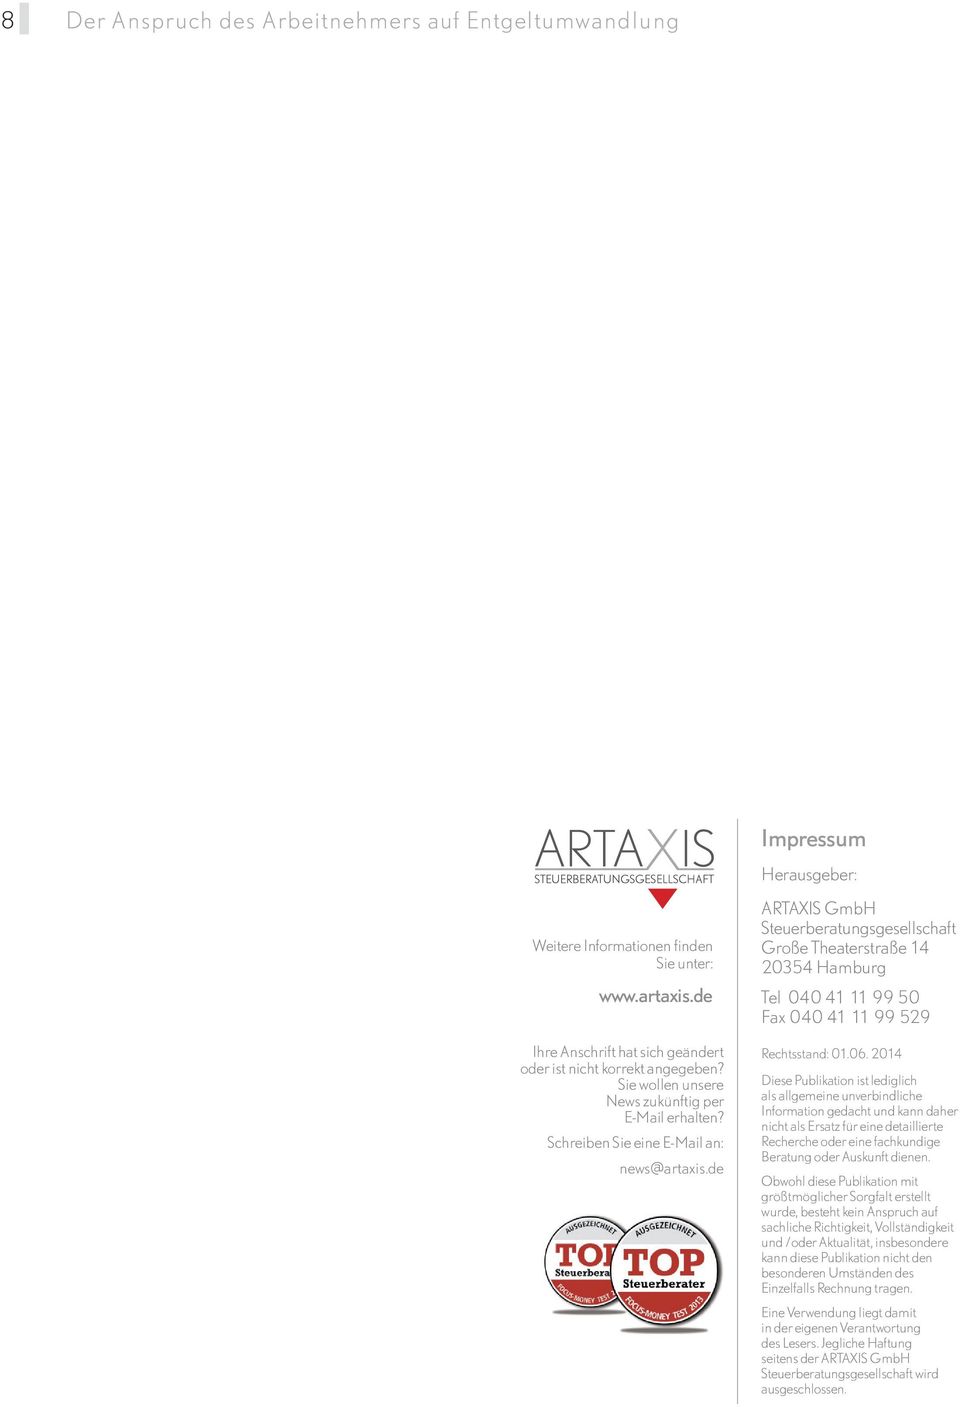 de ARTAXIS GmbH Steuerberatungsgesellschaft Große Theaterstraße 14 20354 Hamburg Tel 040 41 11 99 50 Fax 040 41 11 99 529 Rechtsstand: 01.06.